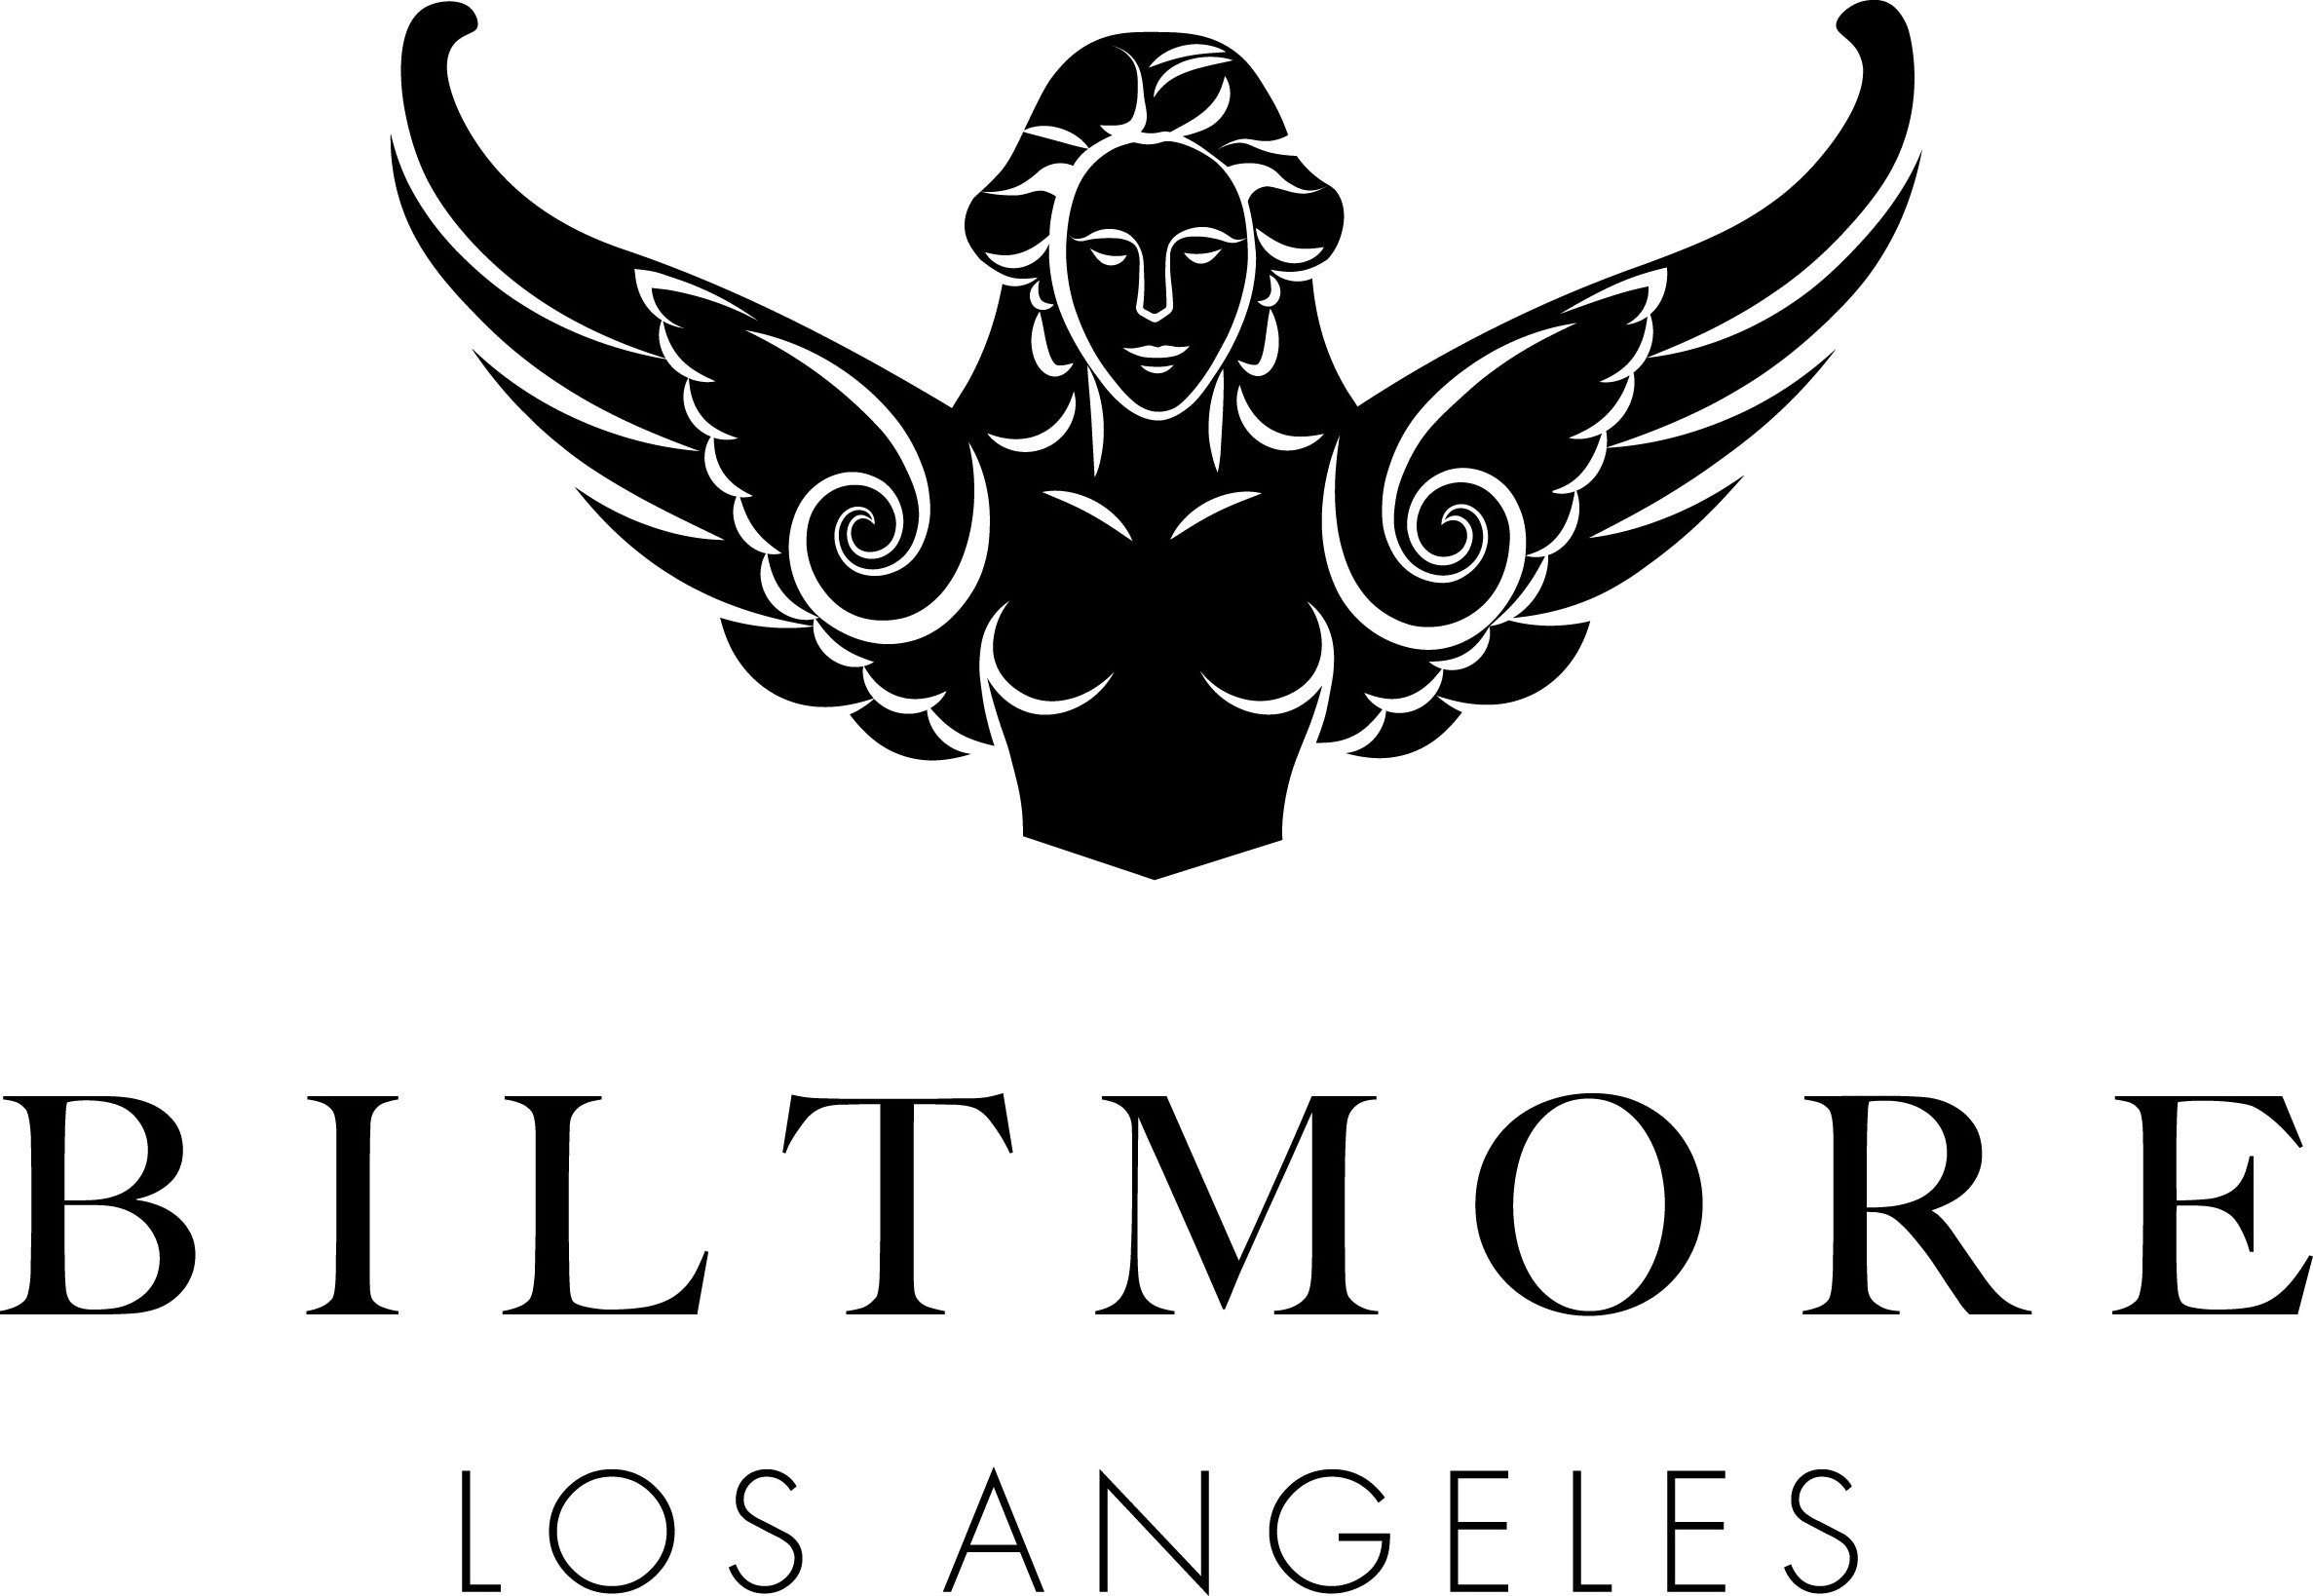  BILTMORE LOS ANGELES